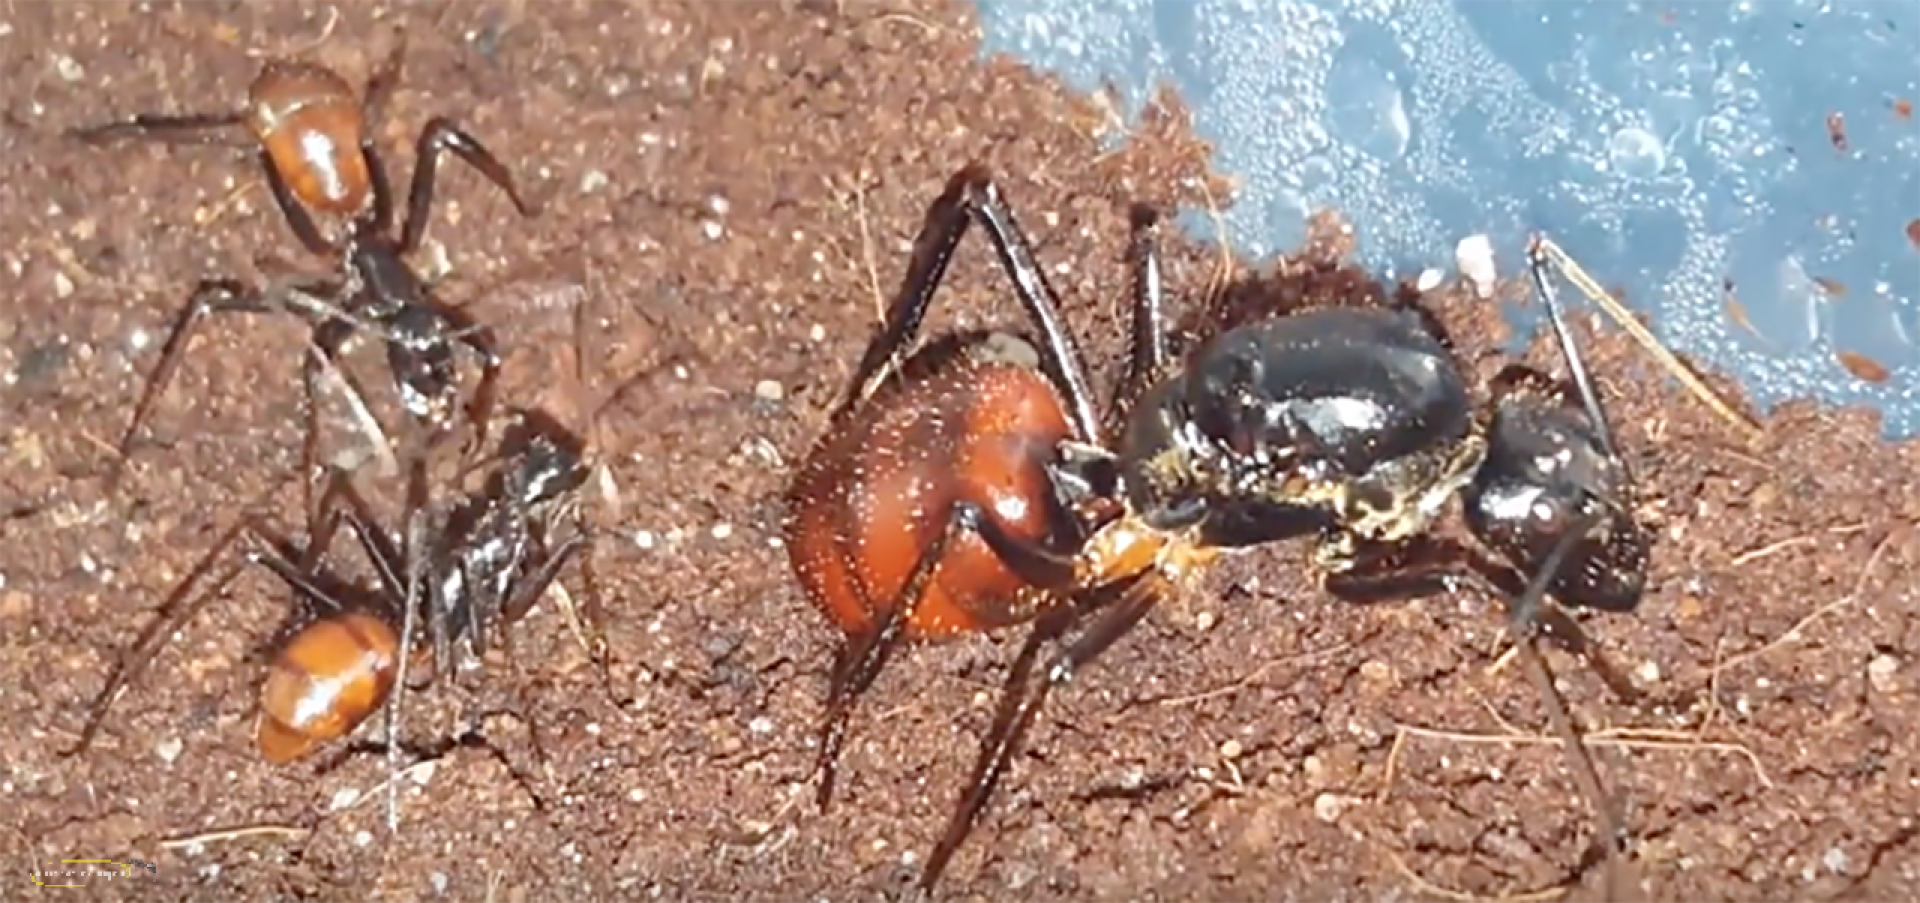 Dinomyrmex gigas - Camponotus gigas